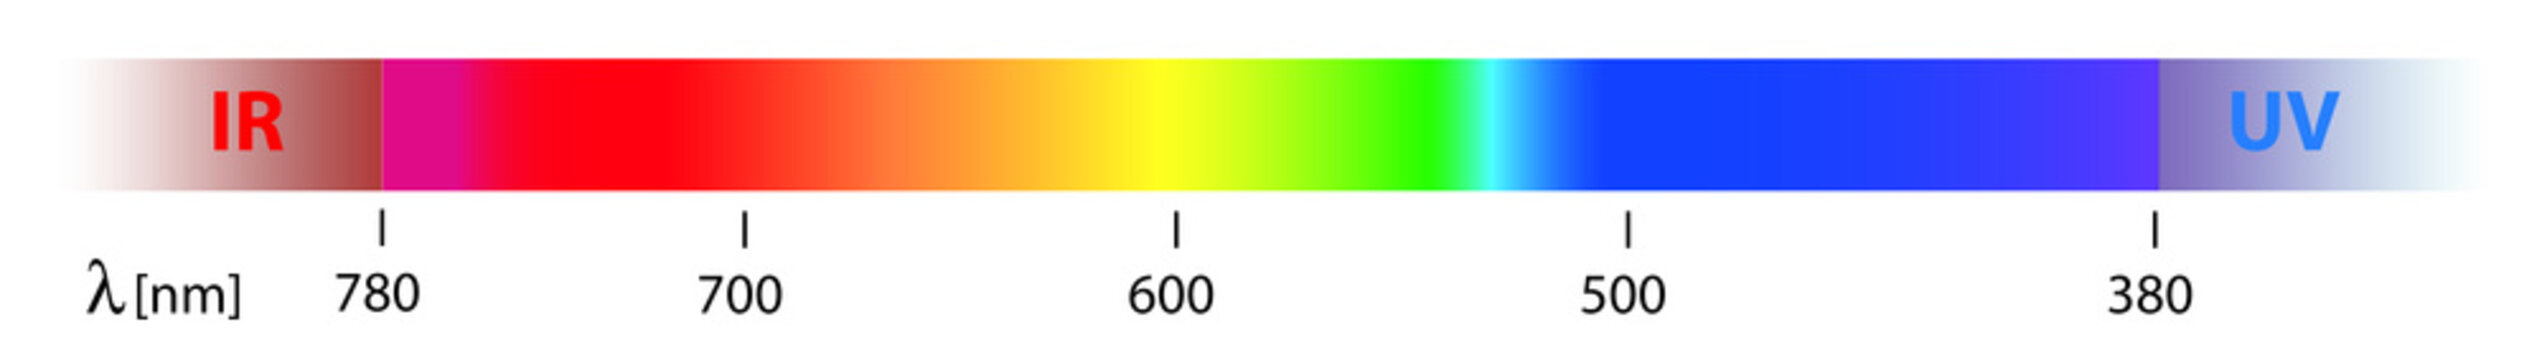 sunlight spectrum